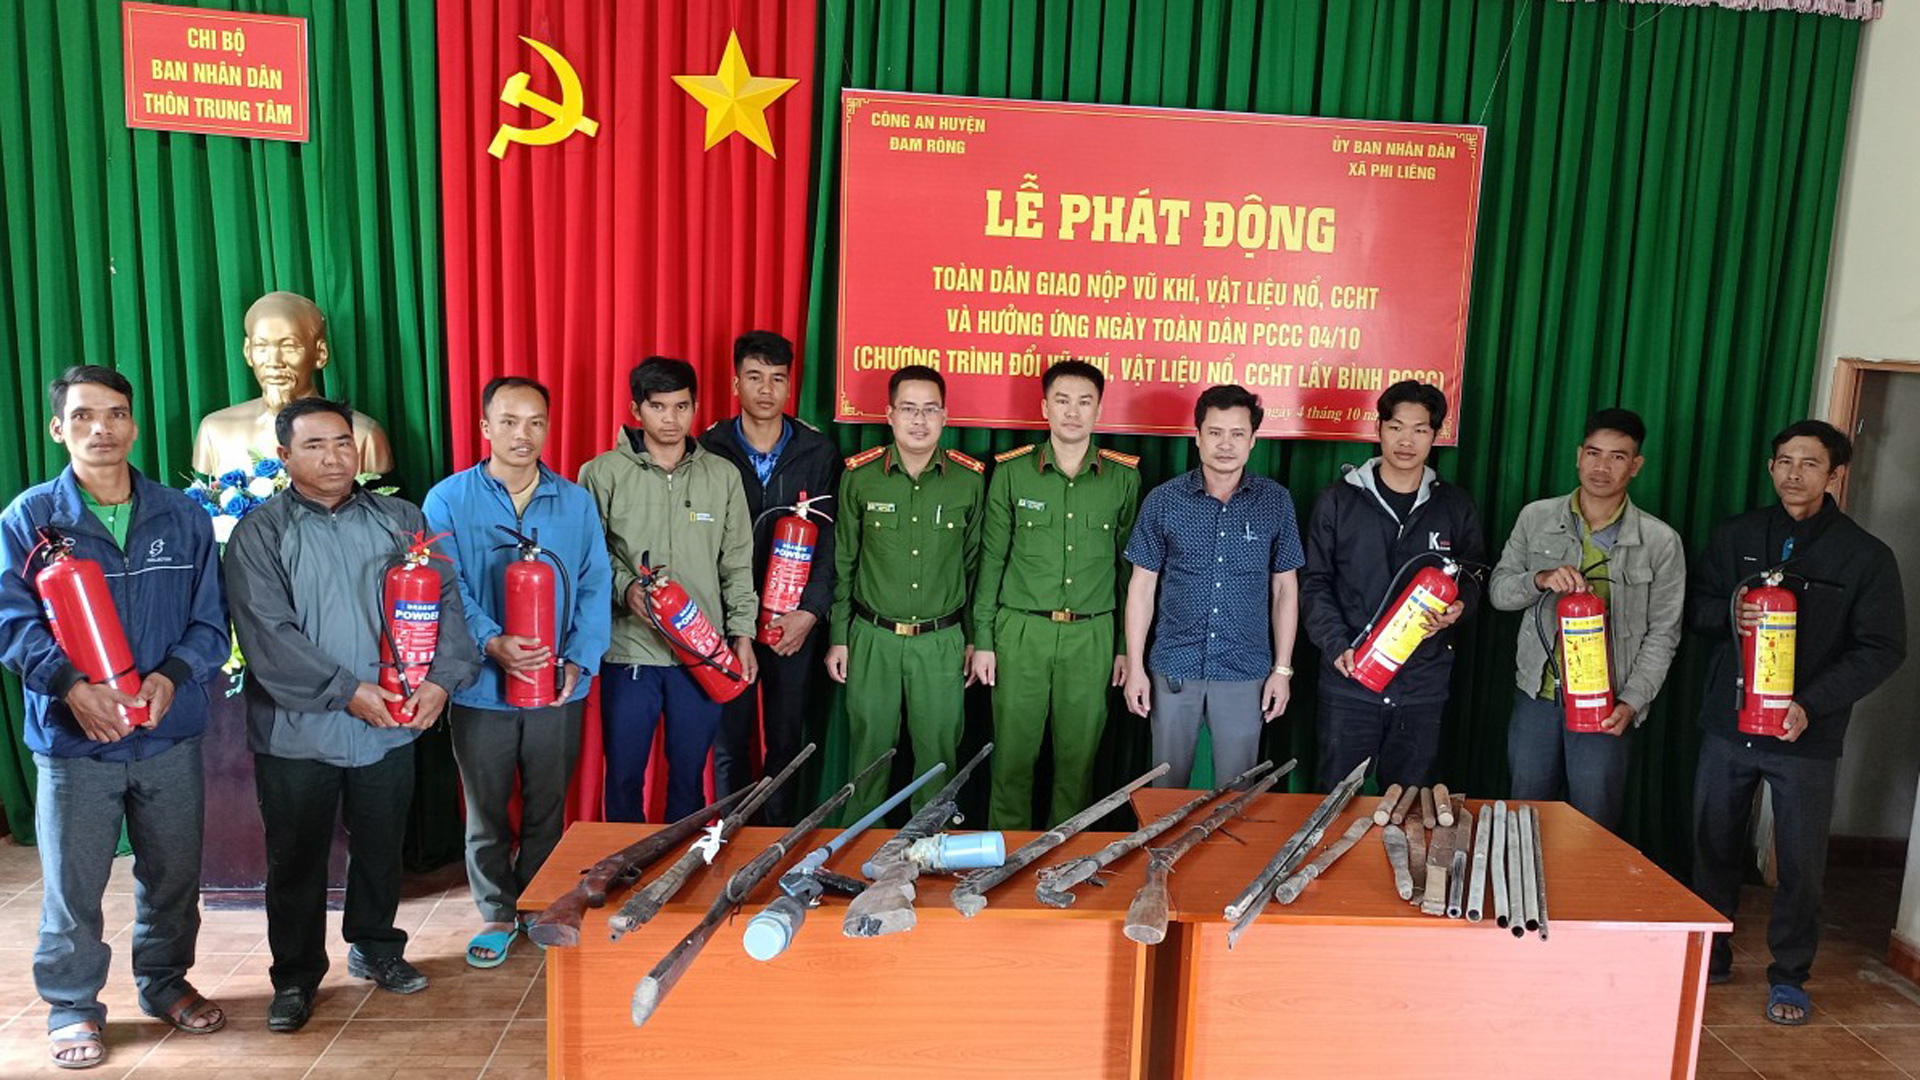 Công an Lâm Đồng đổi vũ khí, vật liệu nổ lấy bình chữa cháy